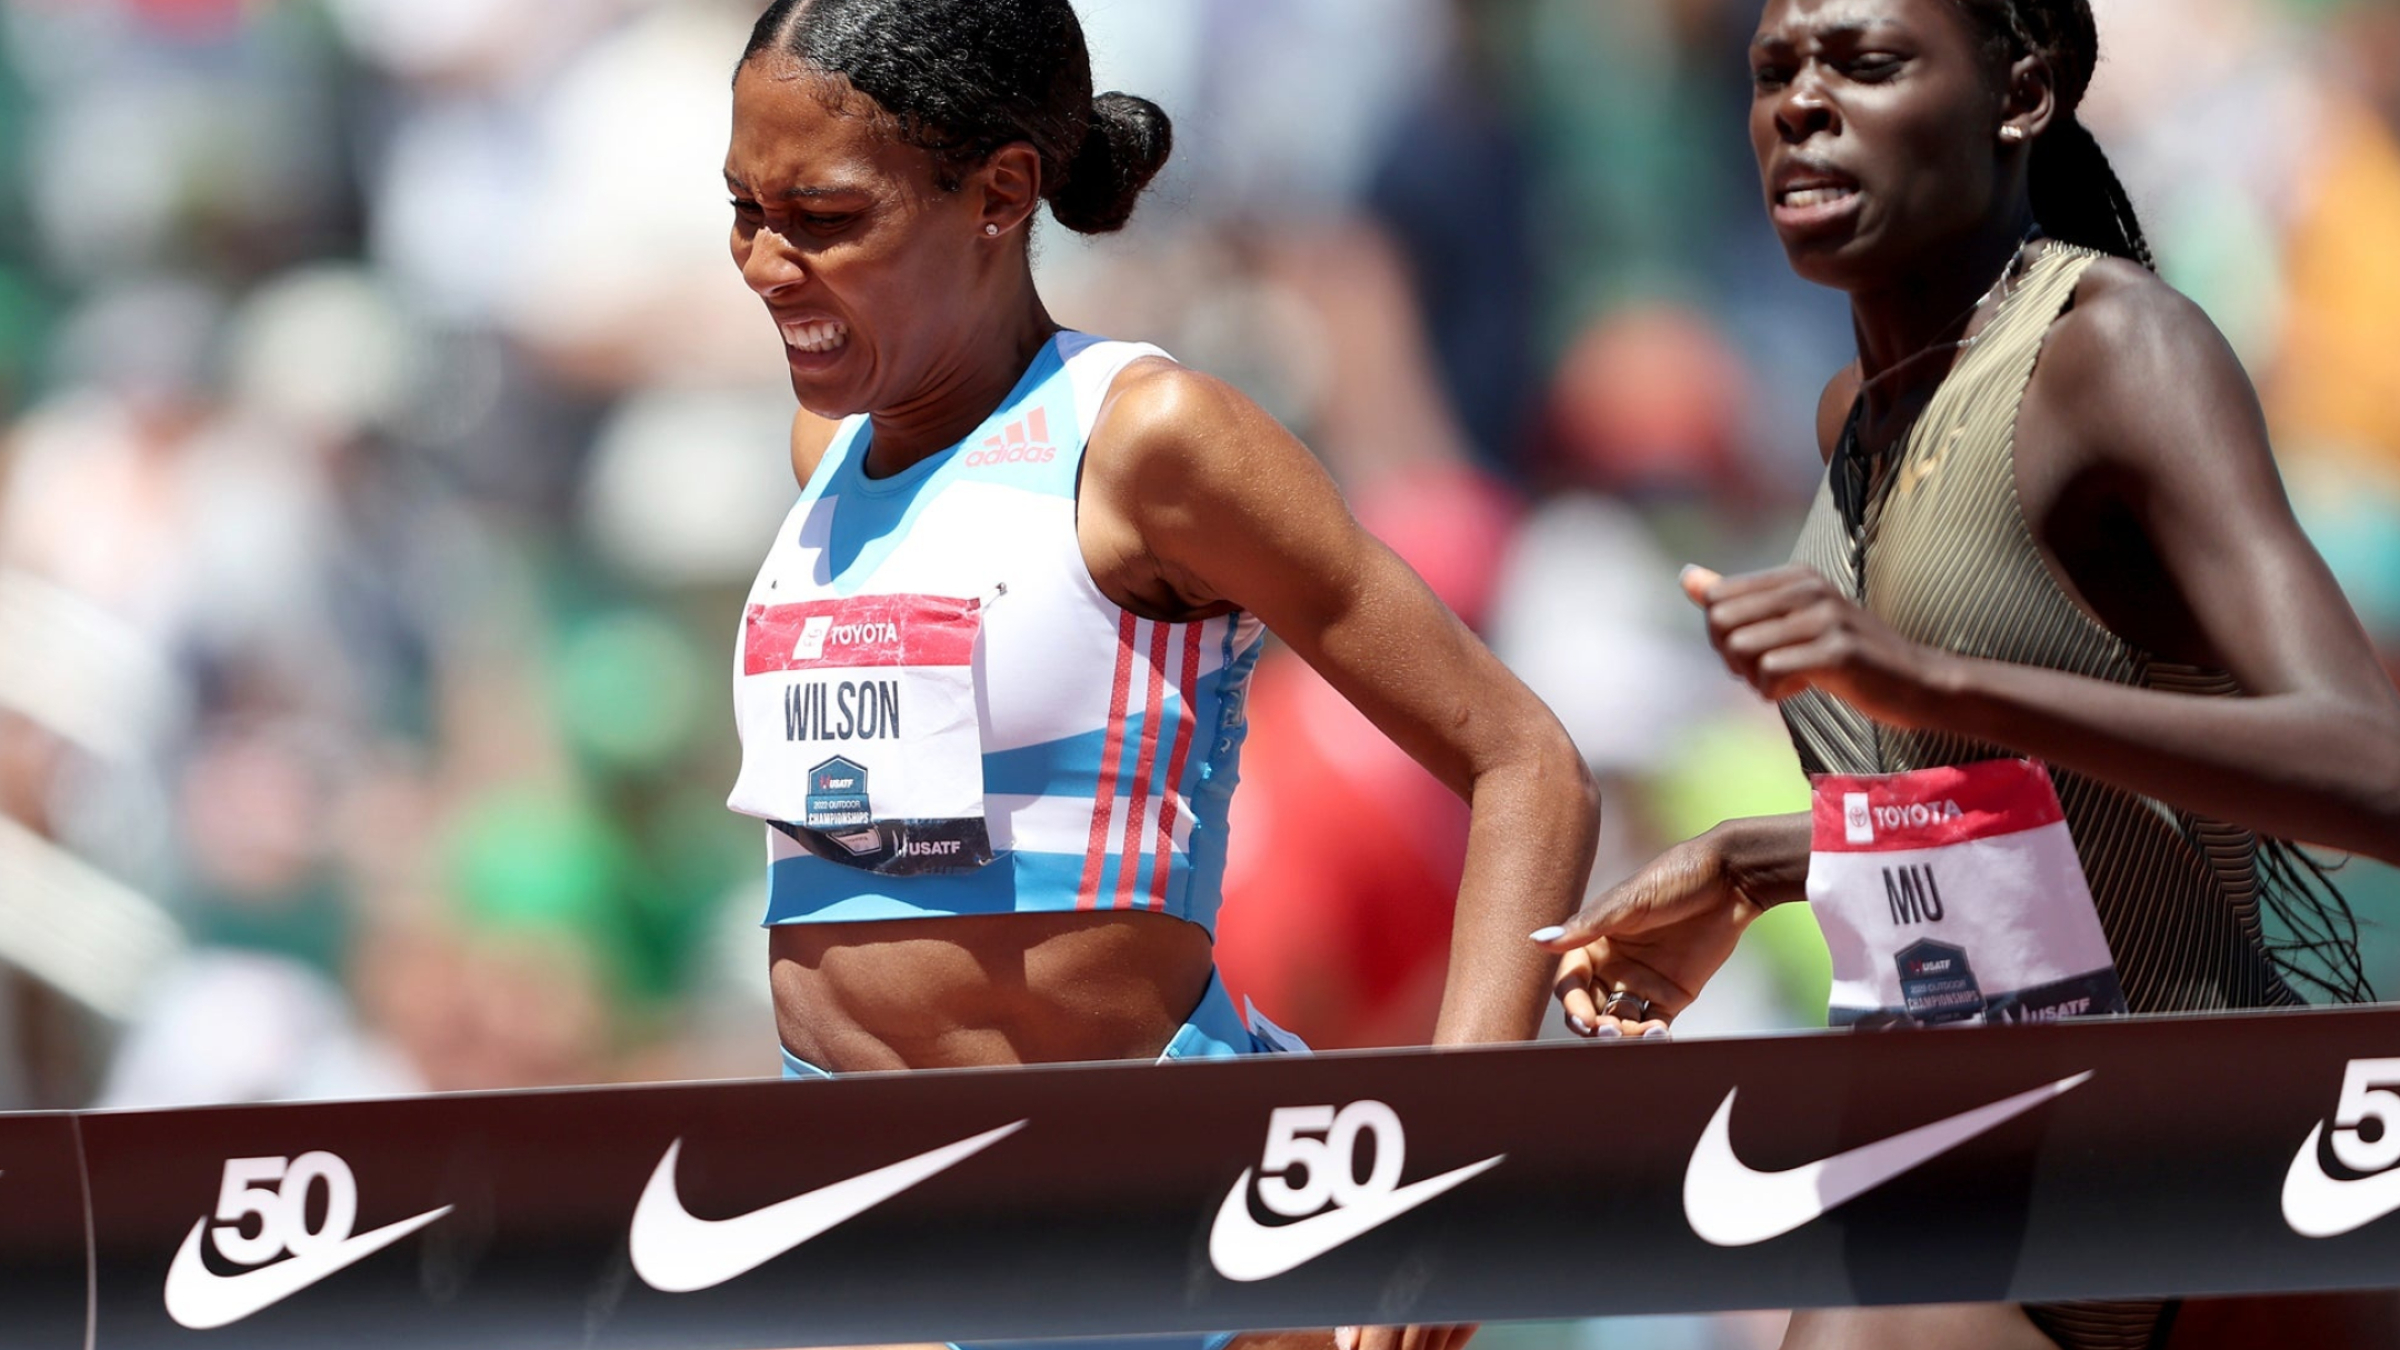 Ajee Wilson, 800 meter title, Women's running, 2400x1350 HD Desktop